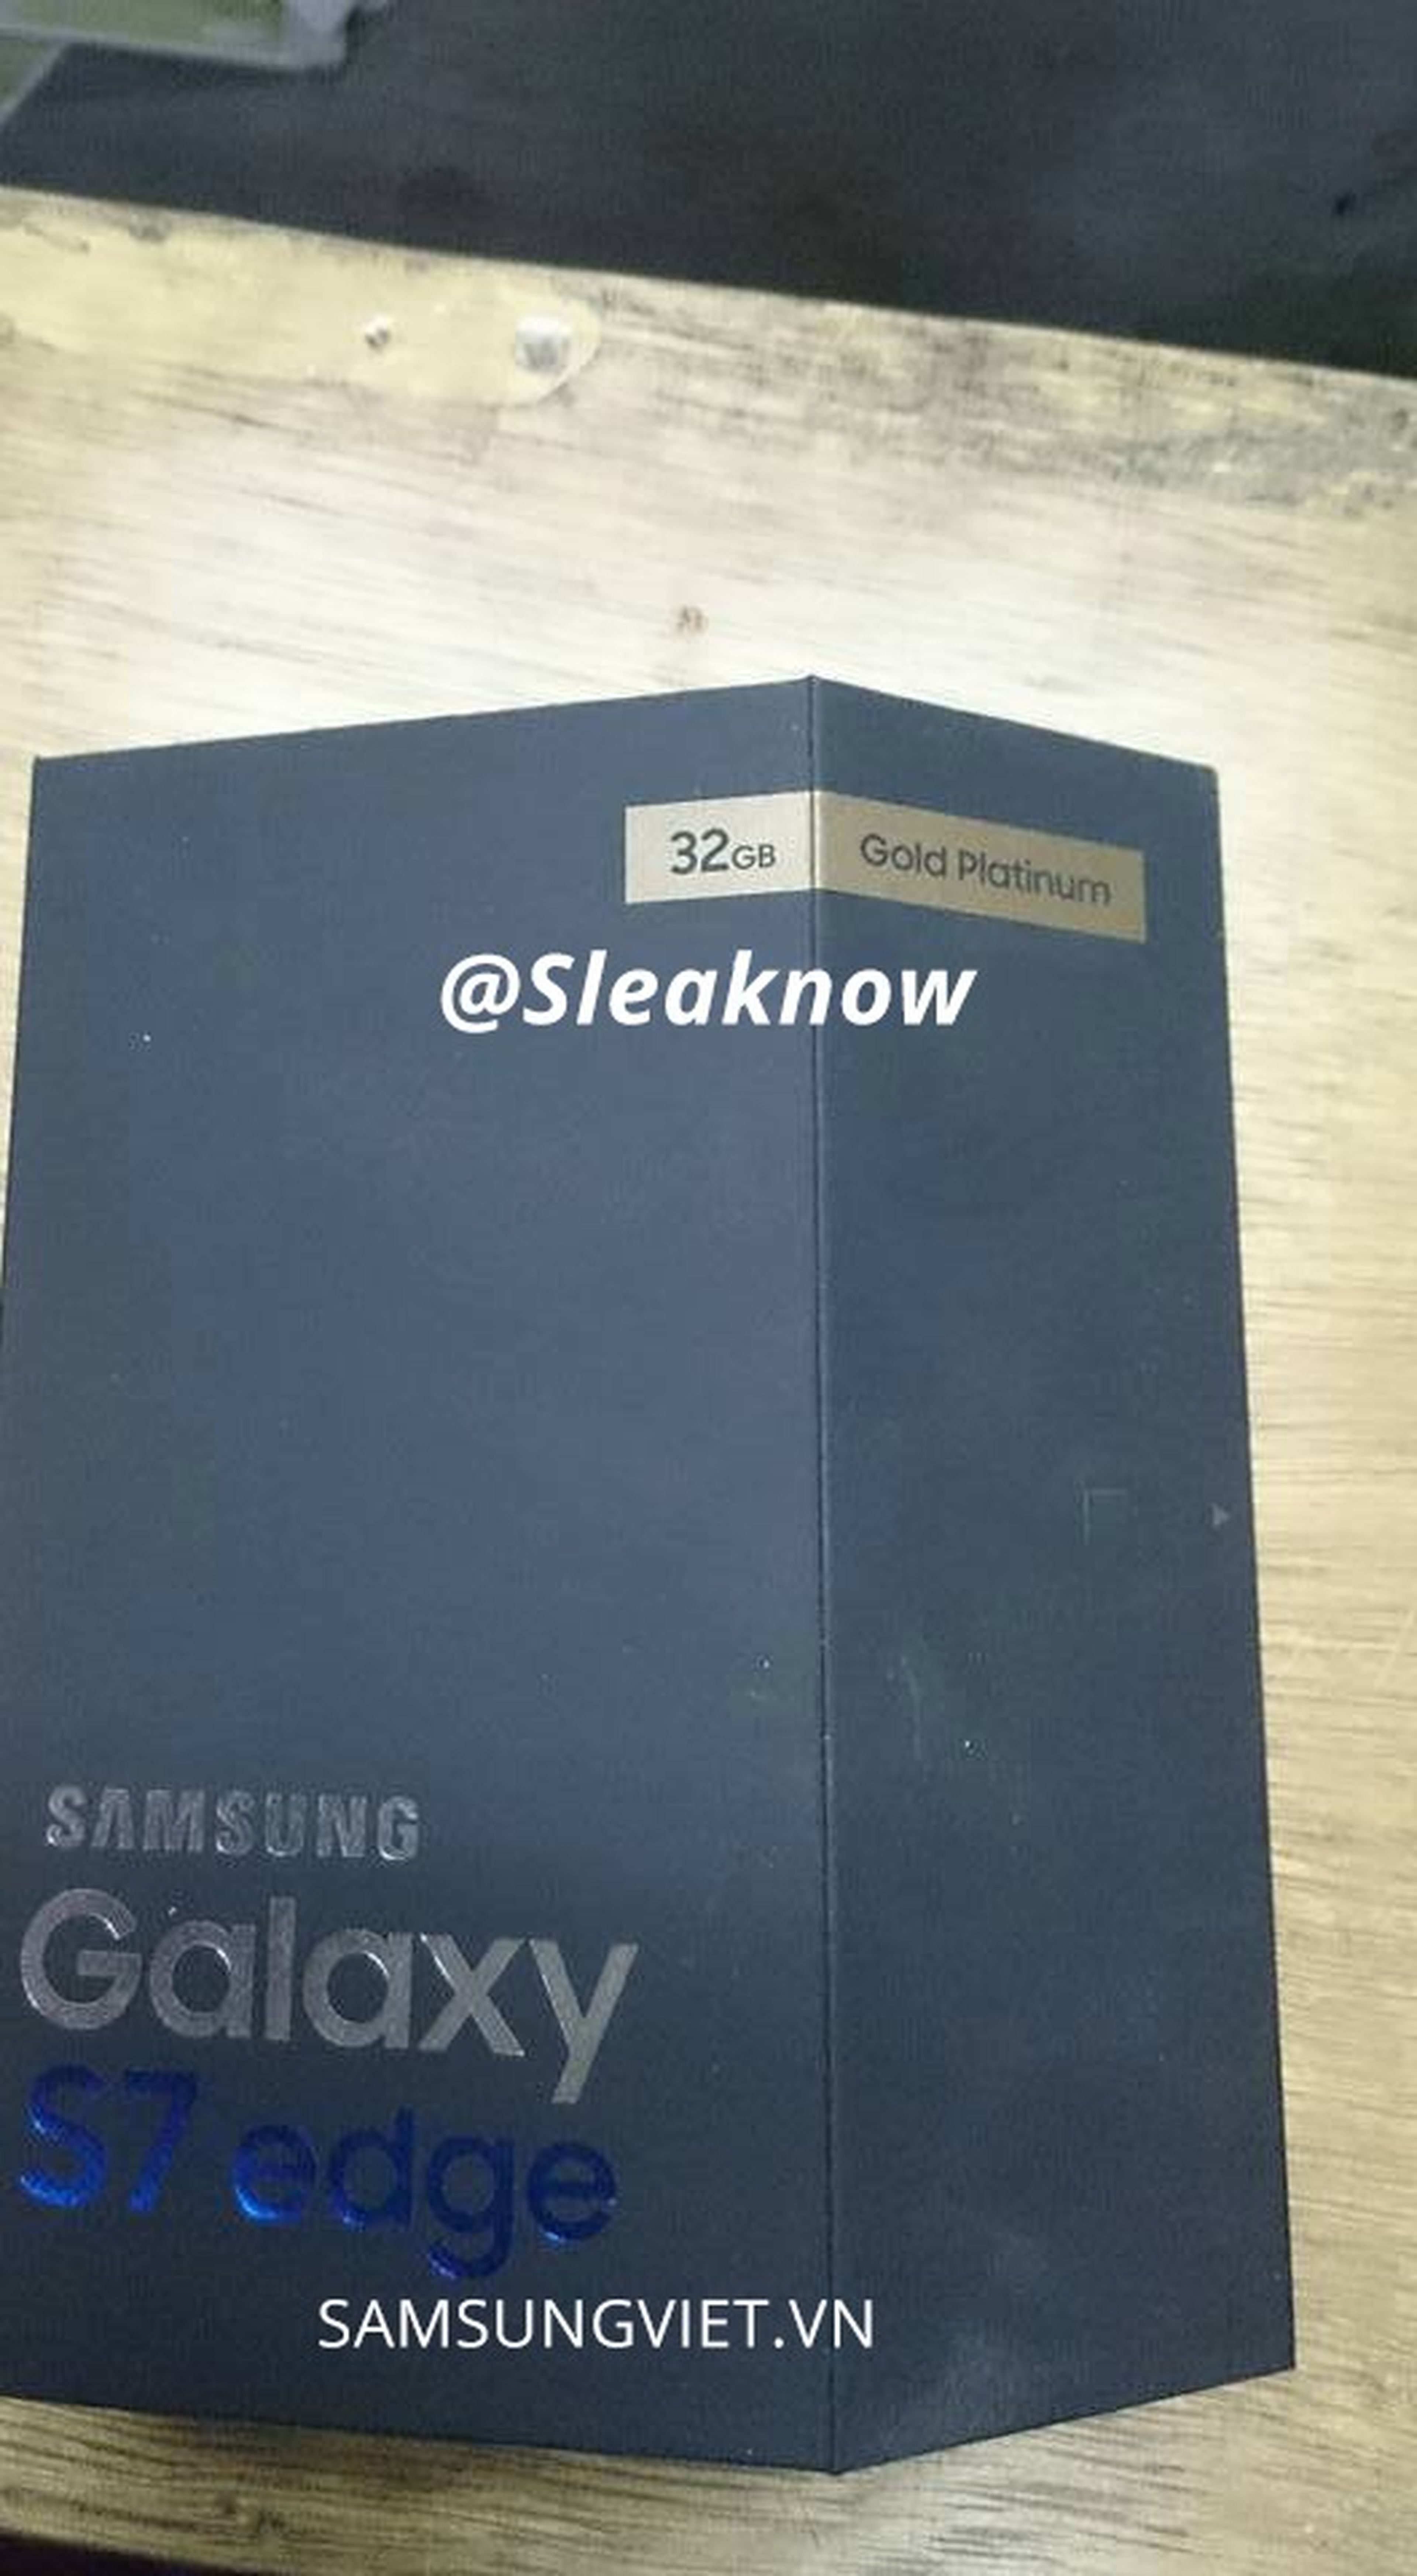 Así es la caja del Samsung Galaxy S7 Edge